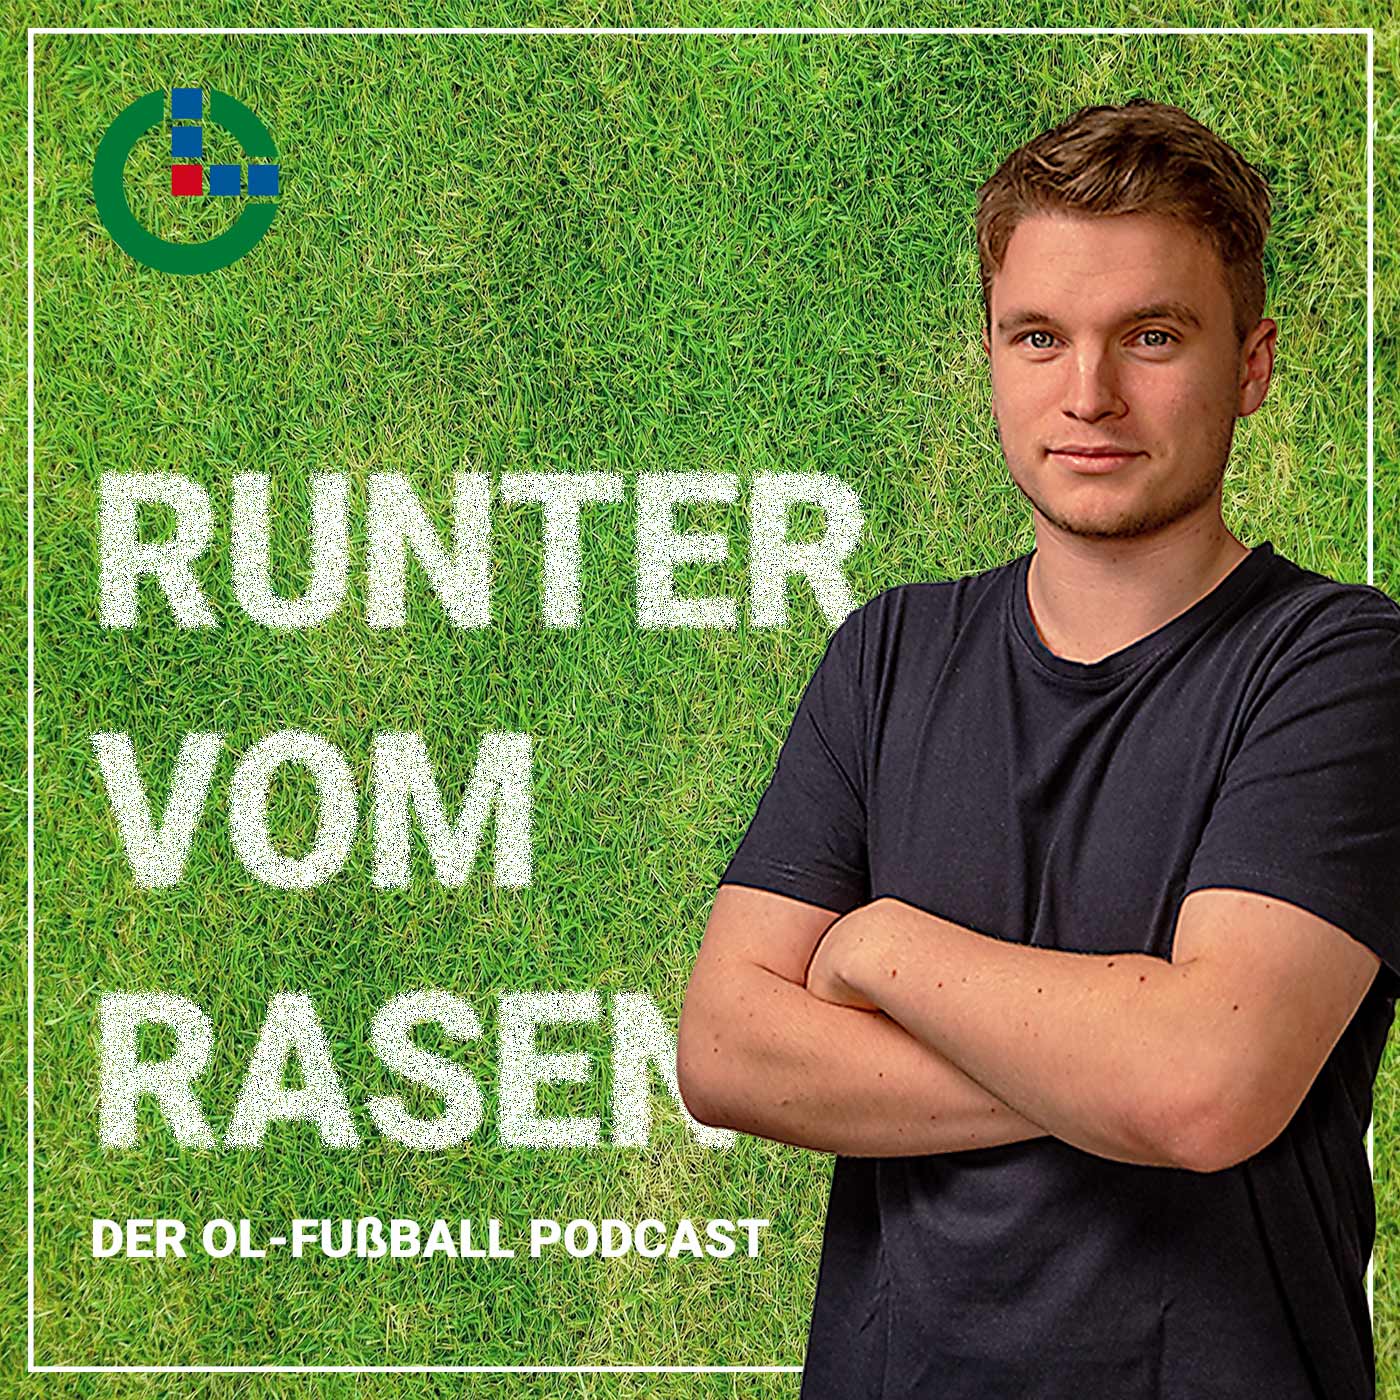 Artwork for podcast Runter vom Rasen